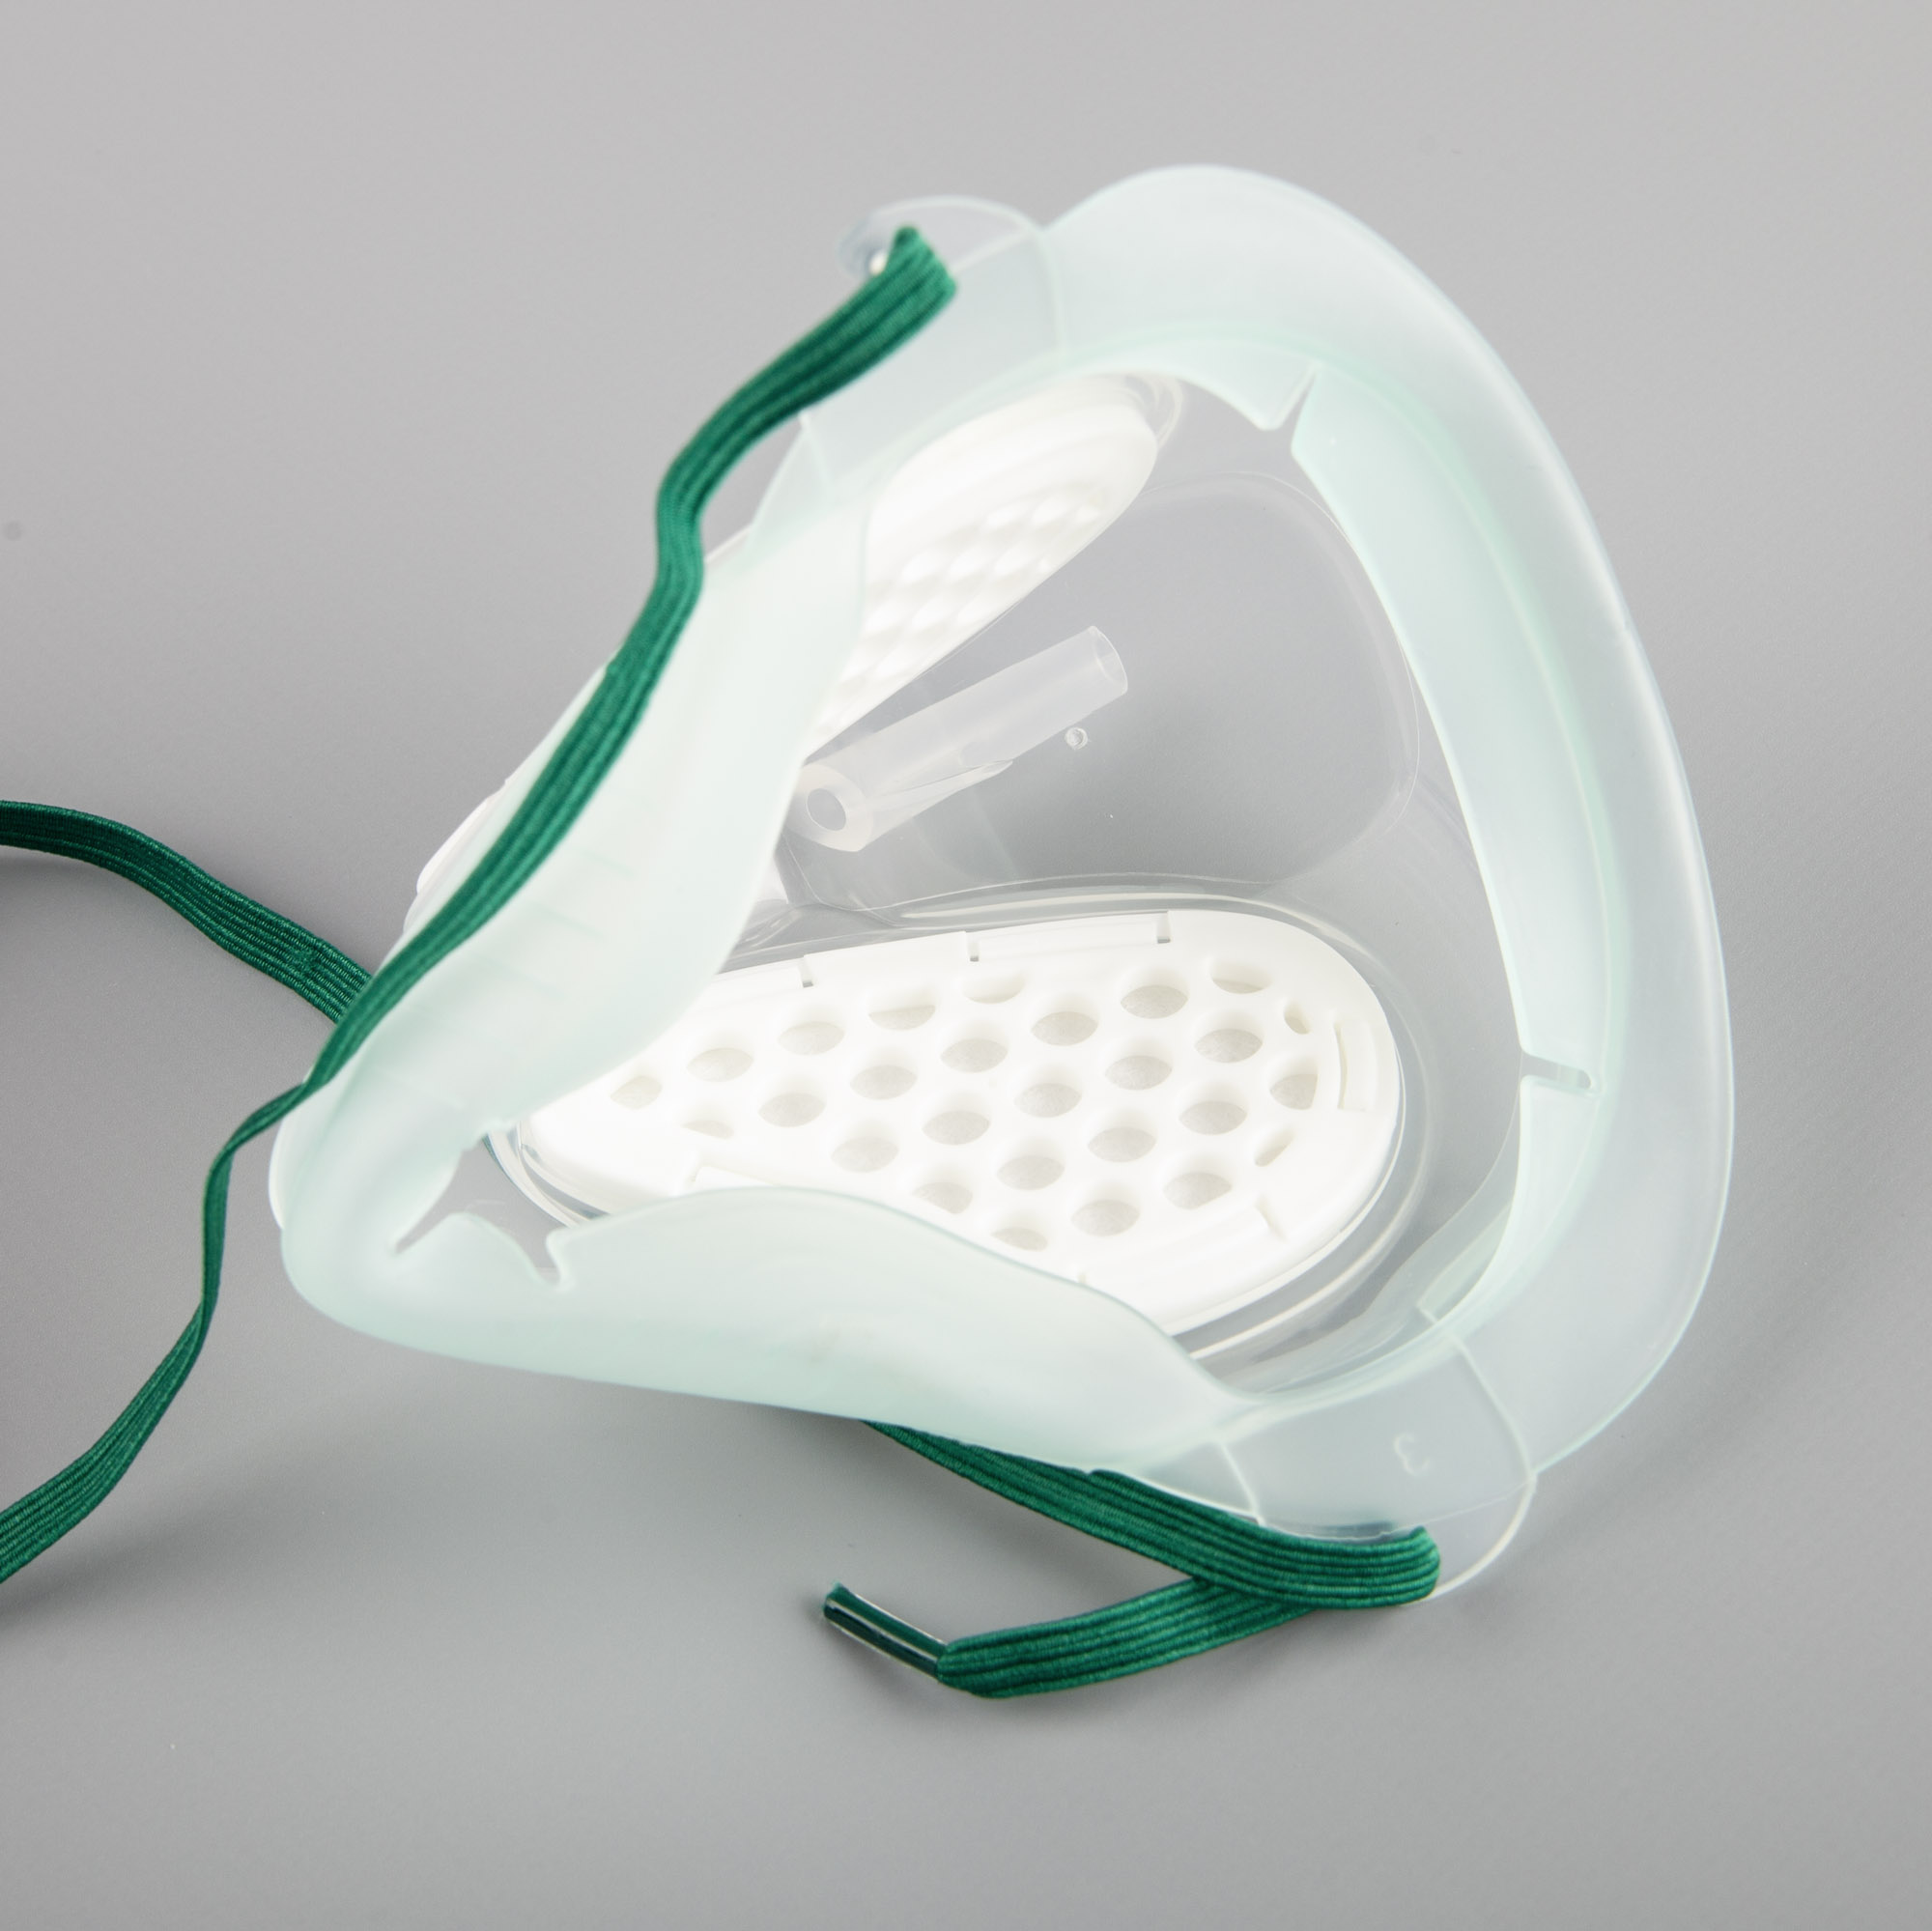 Sauerstoff-Maske mit integriertem Filtermedium